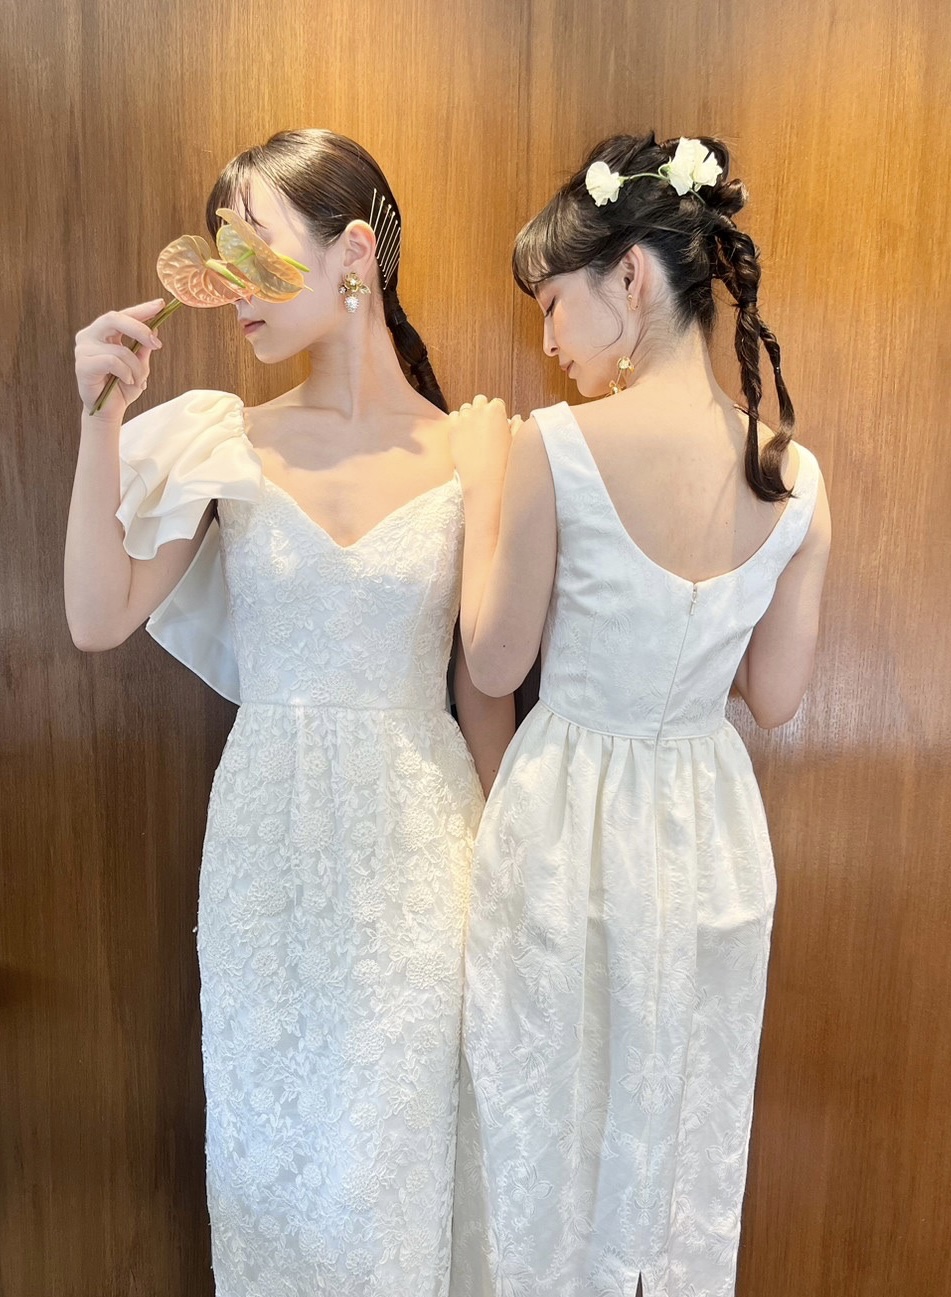 トリートドレッシング神戸店で神戸エリアのおしゃれな花嫁におすすめしたい日本初上陸のブランドマルカリアンの新作のウェディングドレスをご自身らしさを演出できるコーディネートと合わせてご紹介します。